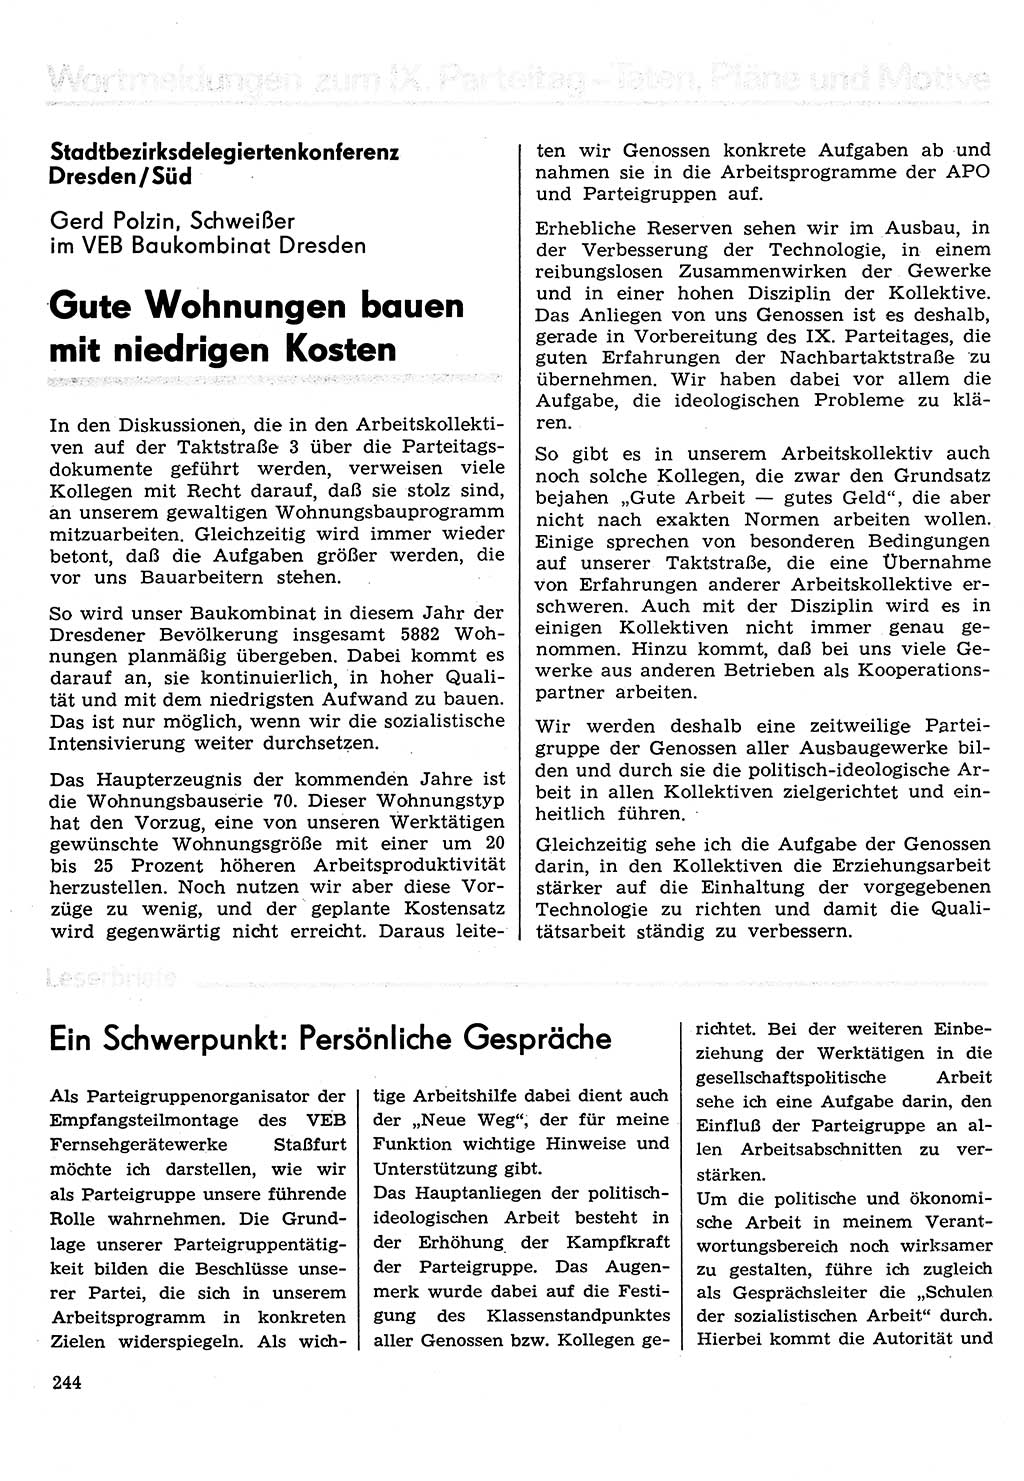 Neuer Weg (NW), Organ des Zentralkomitees (ZK) der SED (Sozialistische Einheitspartei Deutschlands) für Fragen des Parteilebens, 31. Jahrgang [Deutsche Demokratische Republik (DDR)] 1976, Seite 244 (NW ZK SED DDR 1976, S. 244)